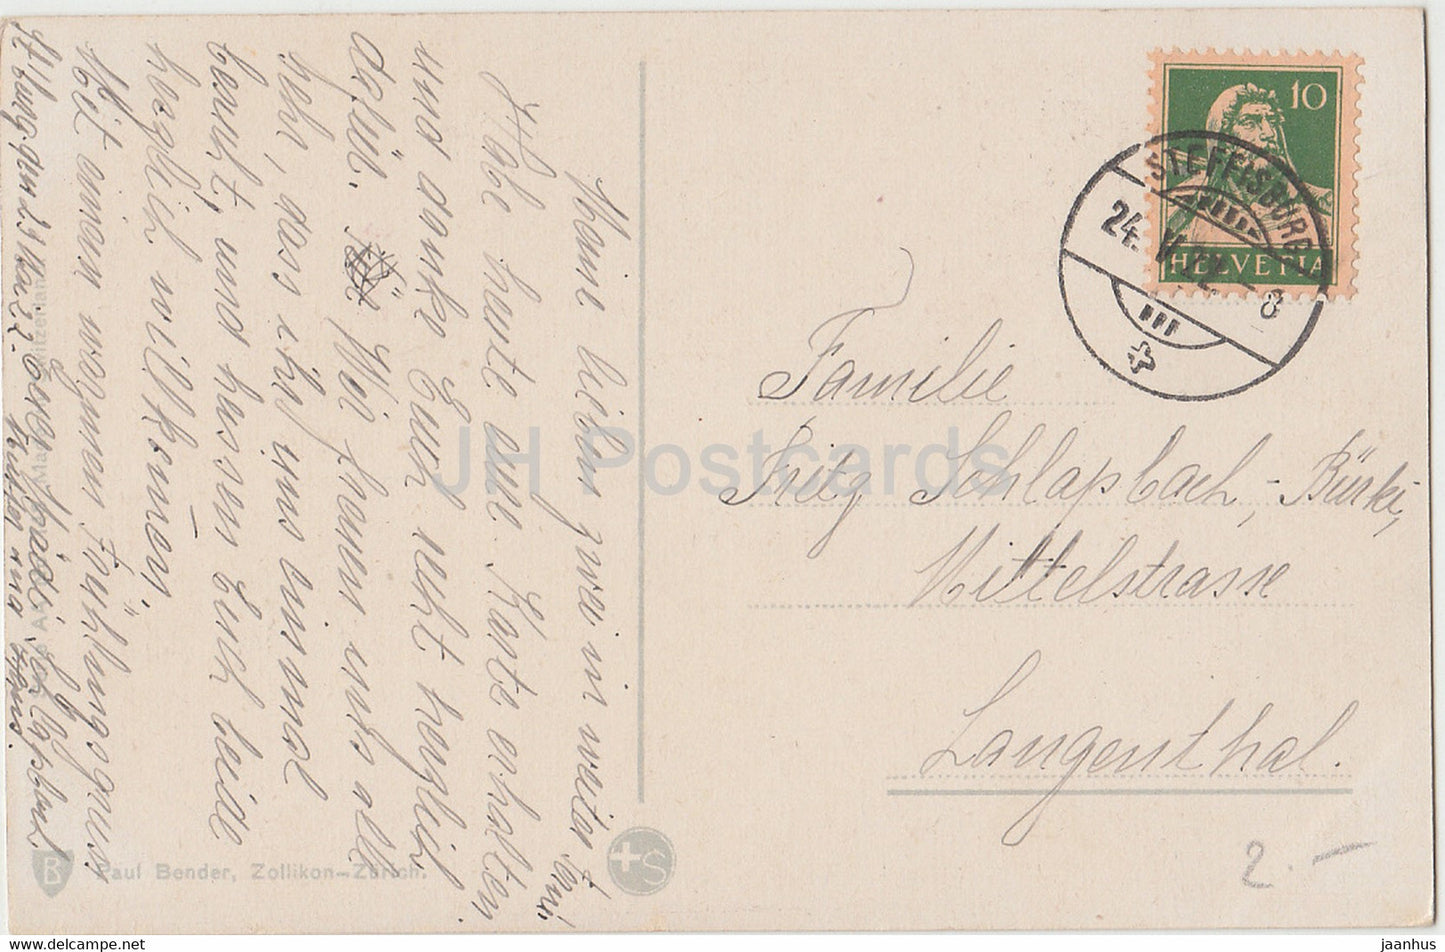 Feldblumen - Blumen - Paul Bender - alte Postkarte - 1922 - Schweiz - gebraucht